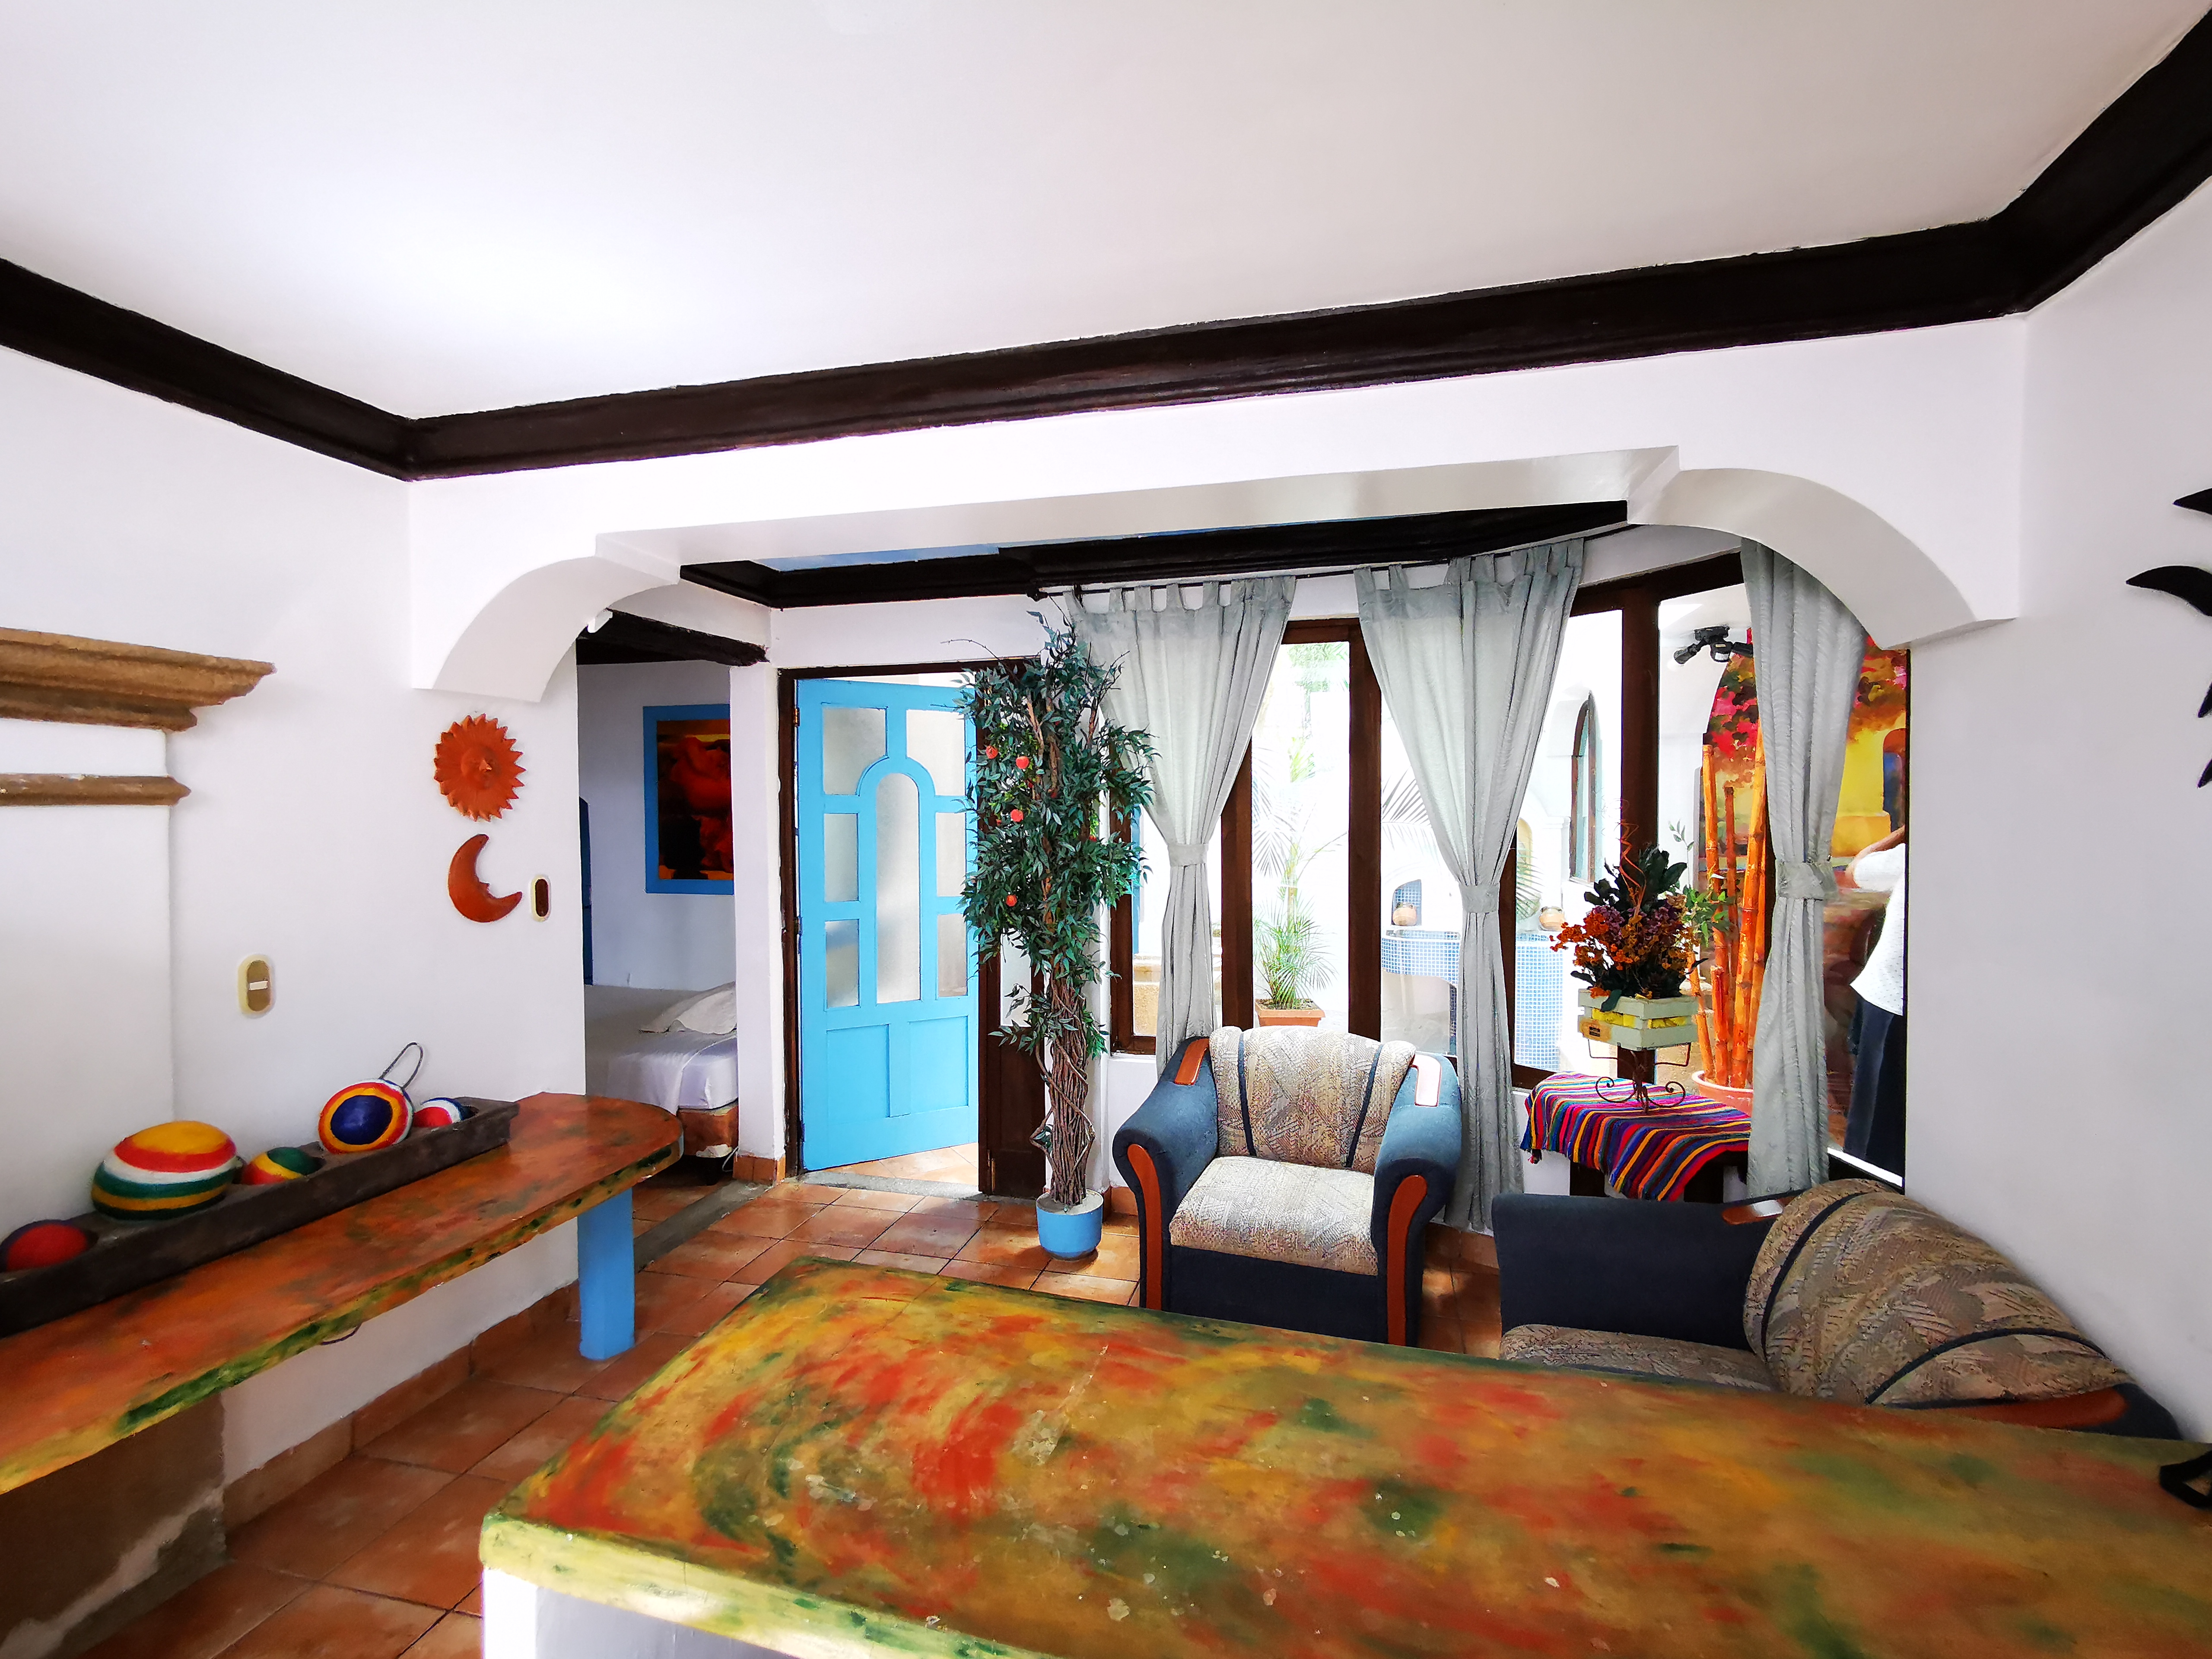 Alquilo precioso apartamento en Antigua Guatemala a un excelente precio!